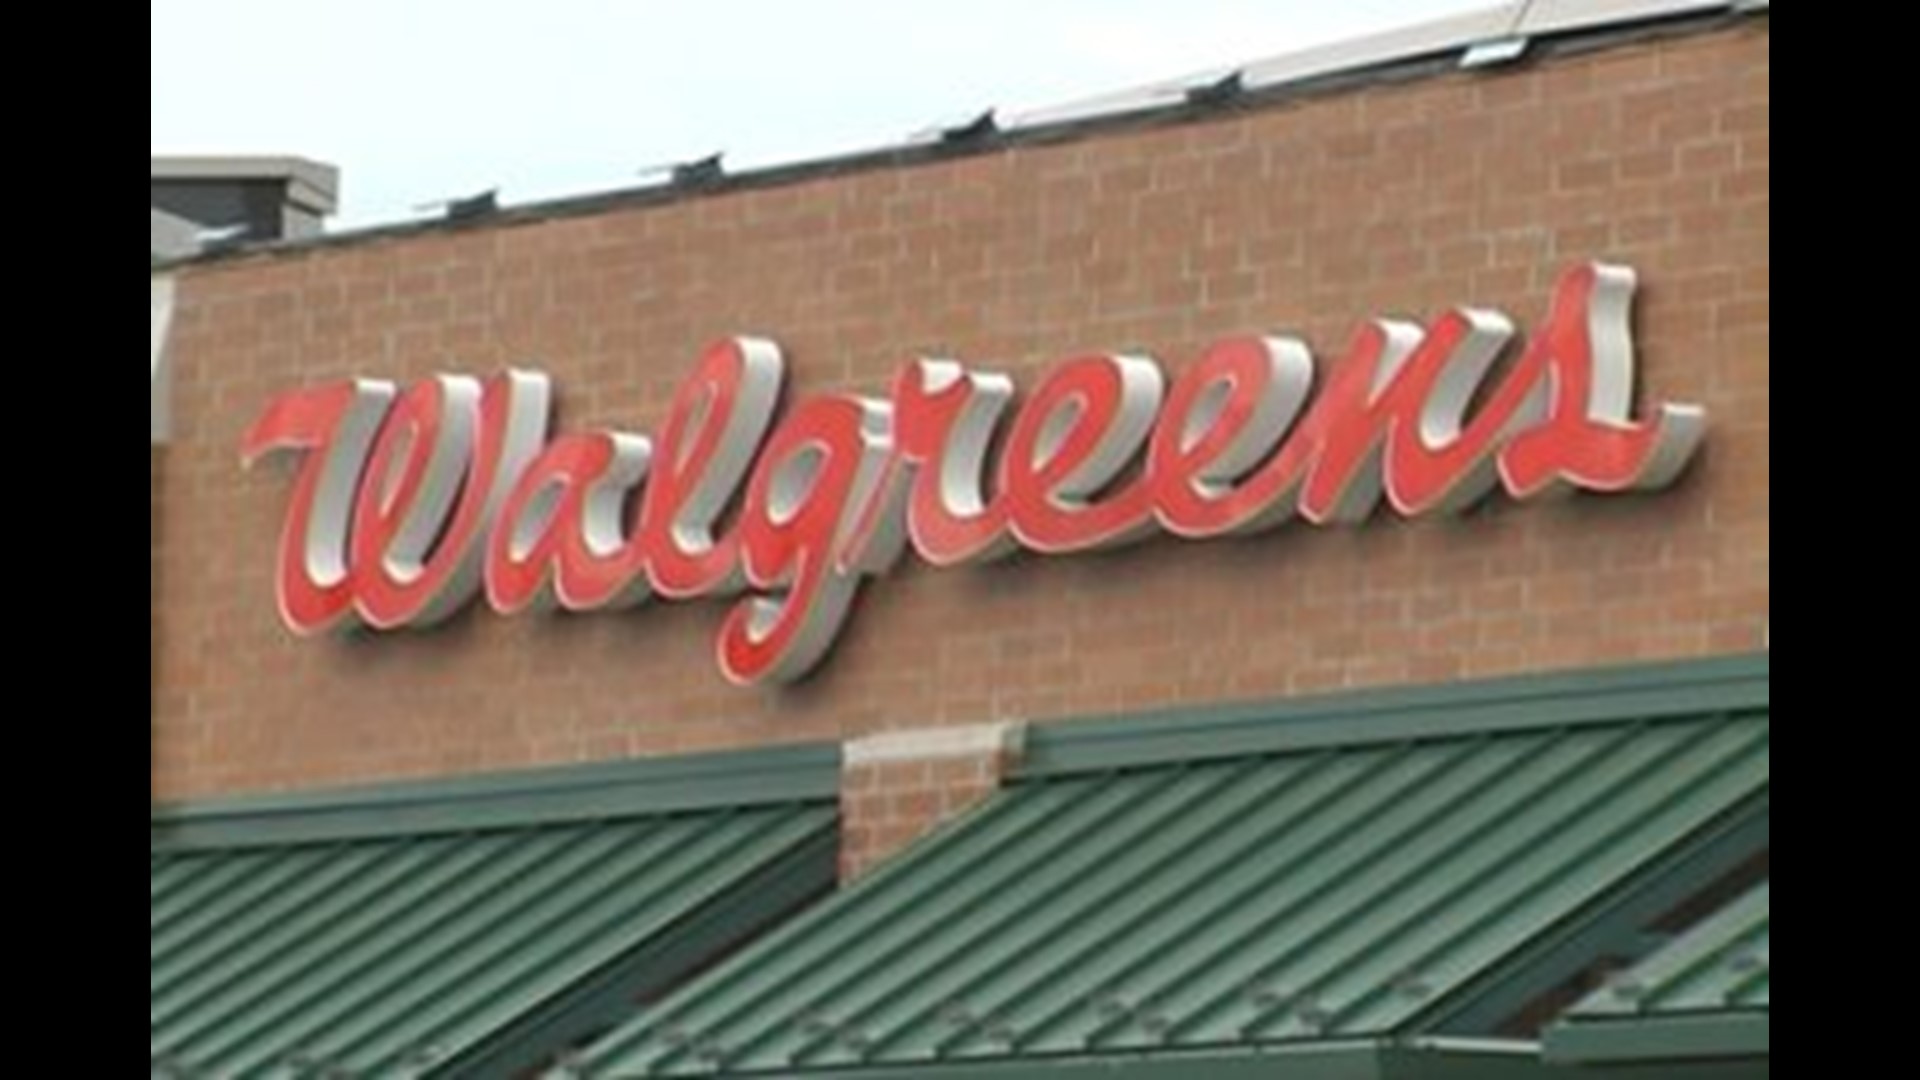 Walgreens closing 76 stores